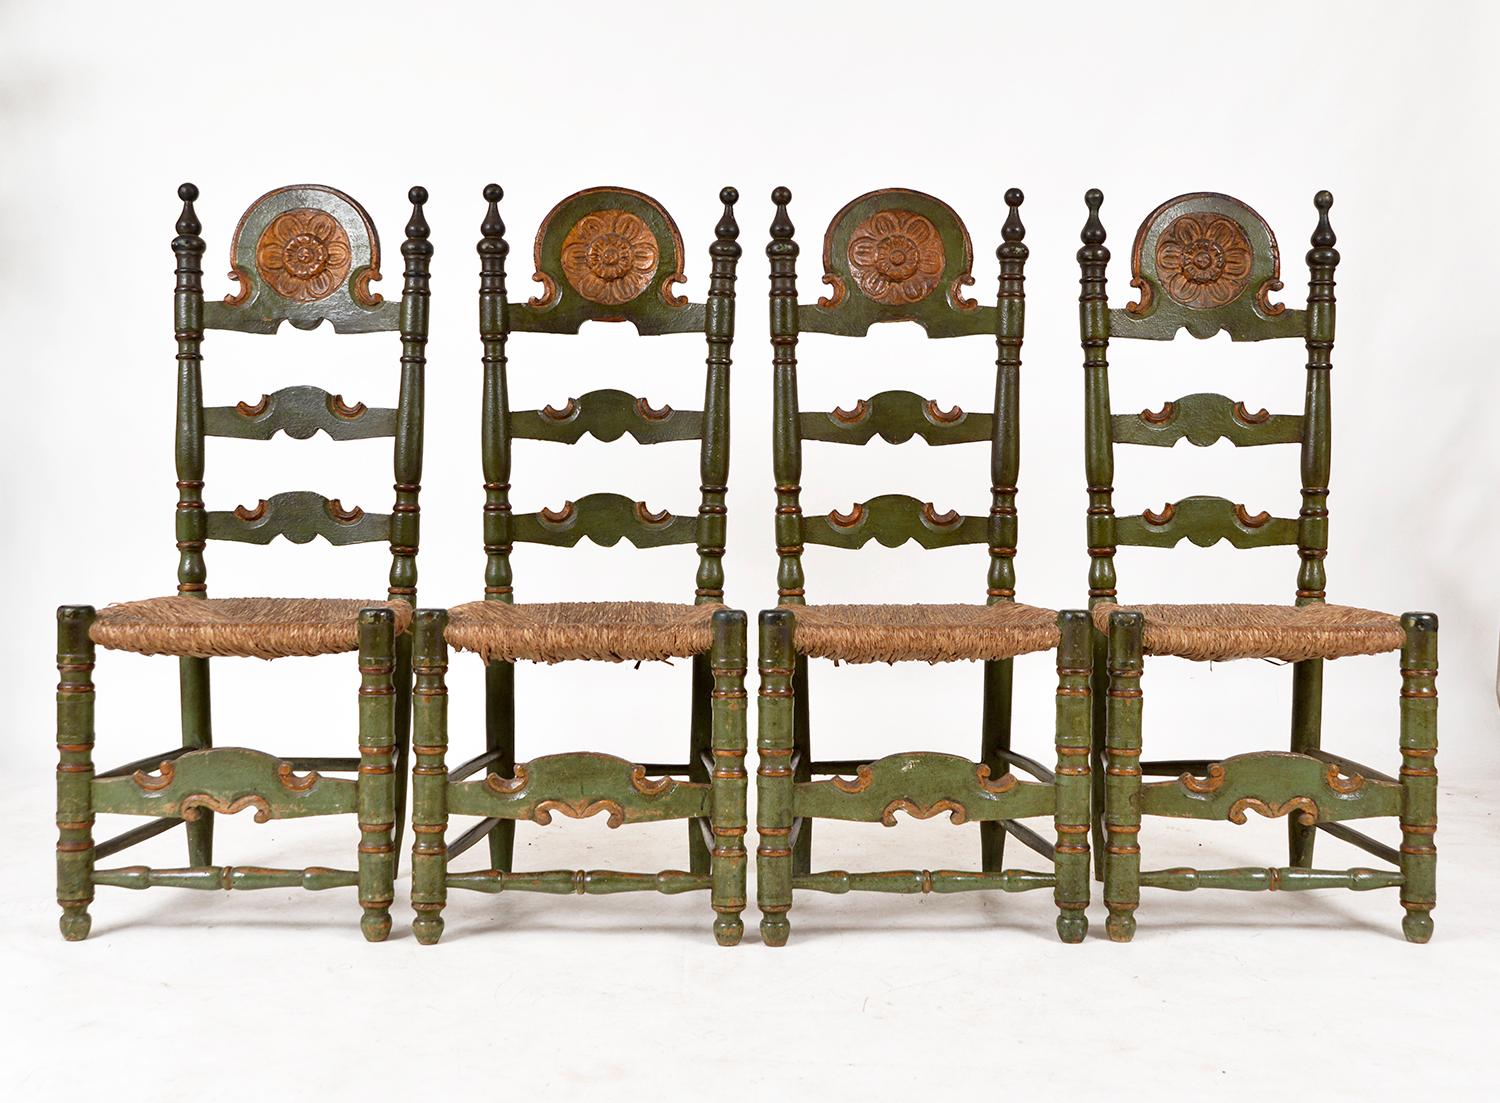 Un ensemble étonnant de quatre chaises de salle à manger andalouses en polychrome original vert foncé et vieil or avec des sièges en jonc - une combinaison étonnante de couleurs avec la patine la plus attrayante. Chaque chaise présente une jolie